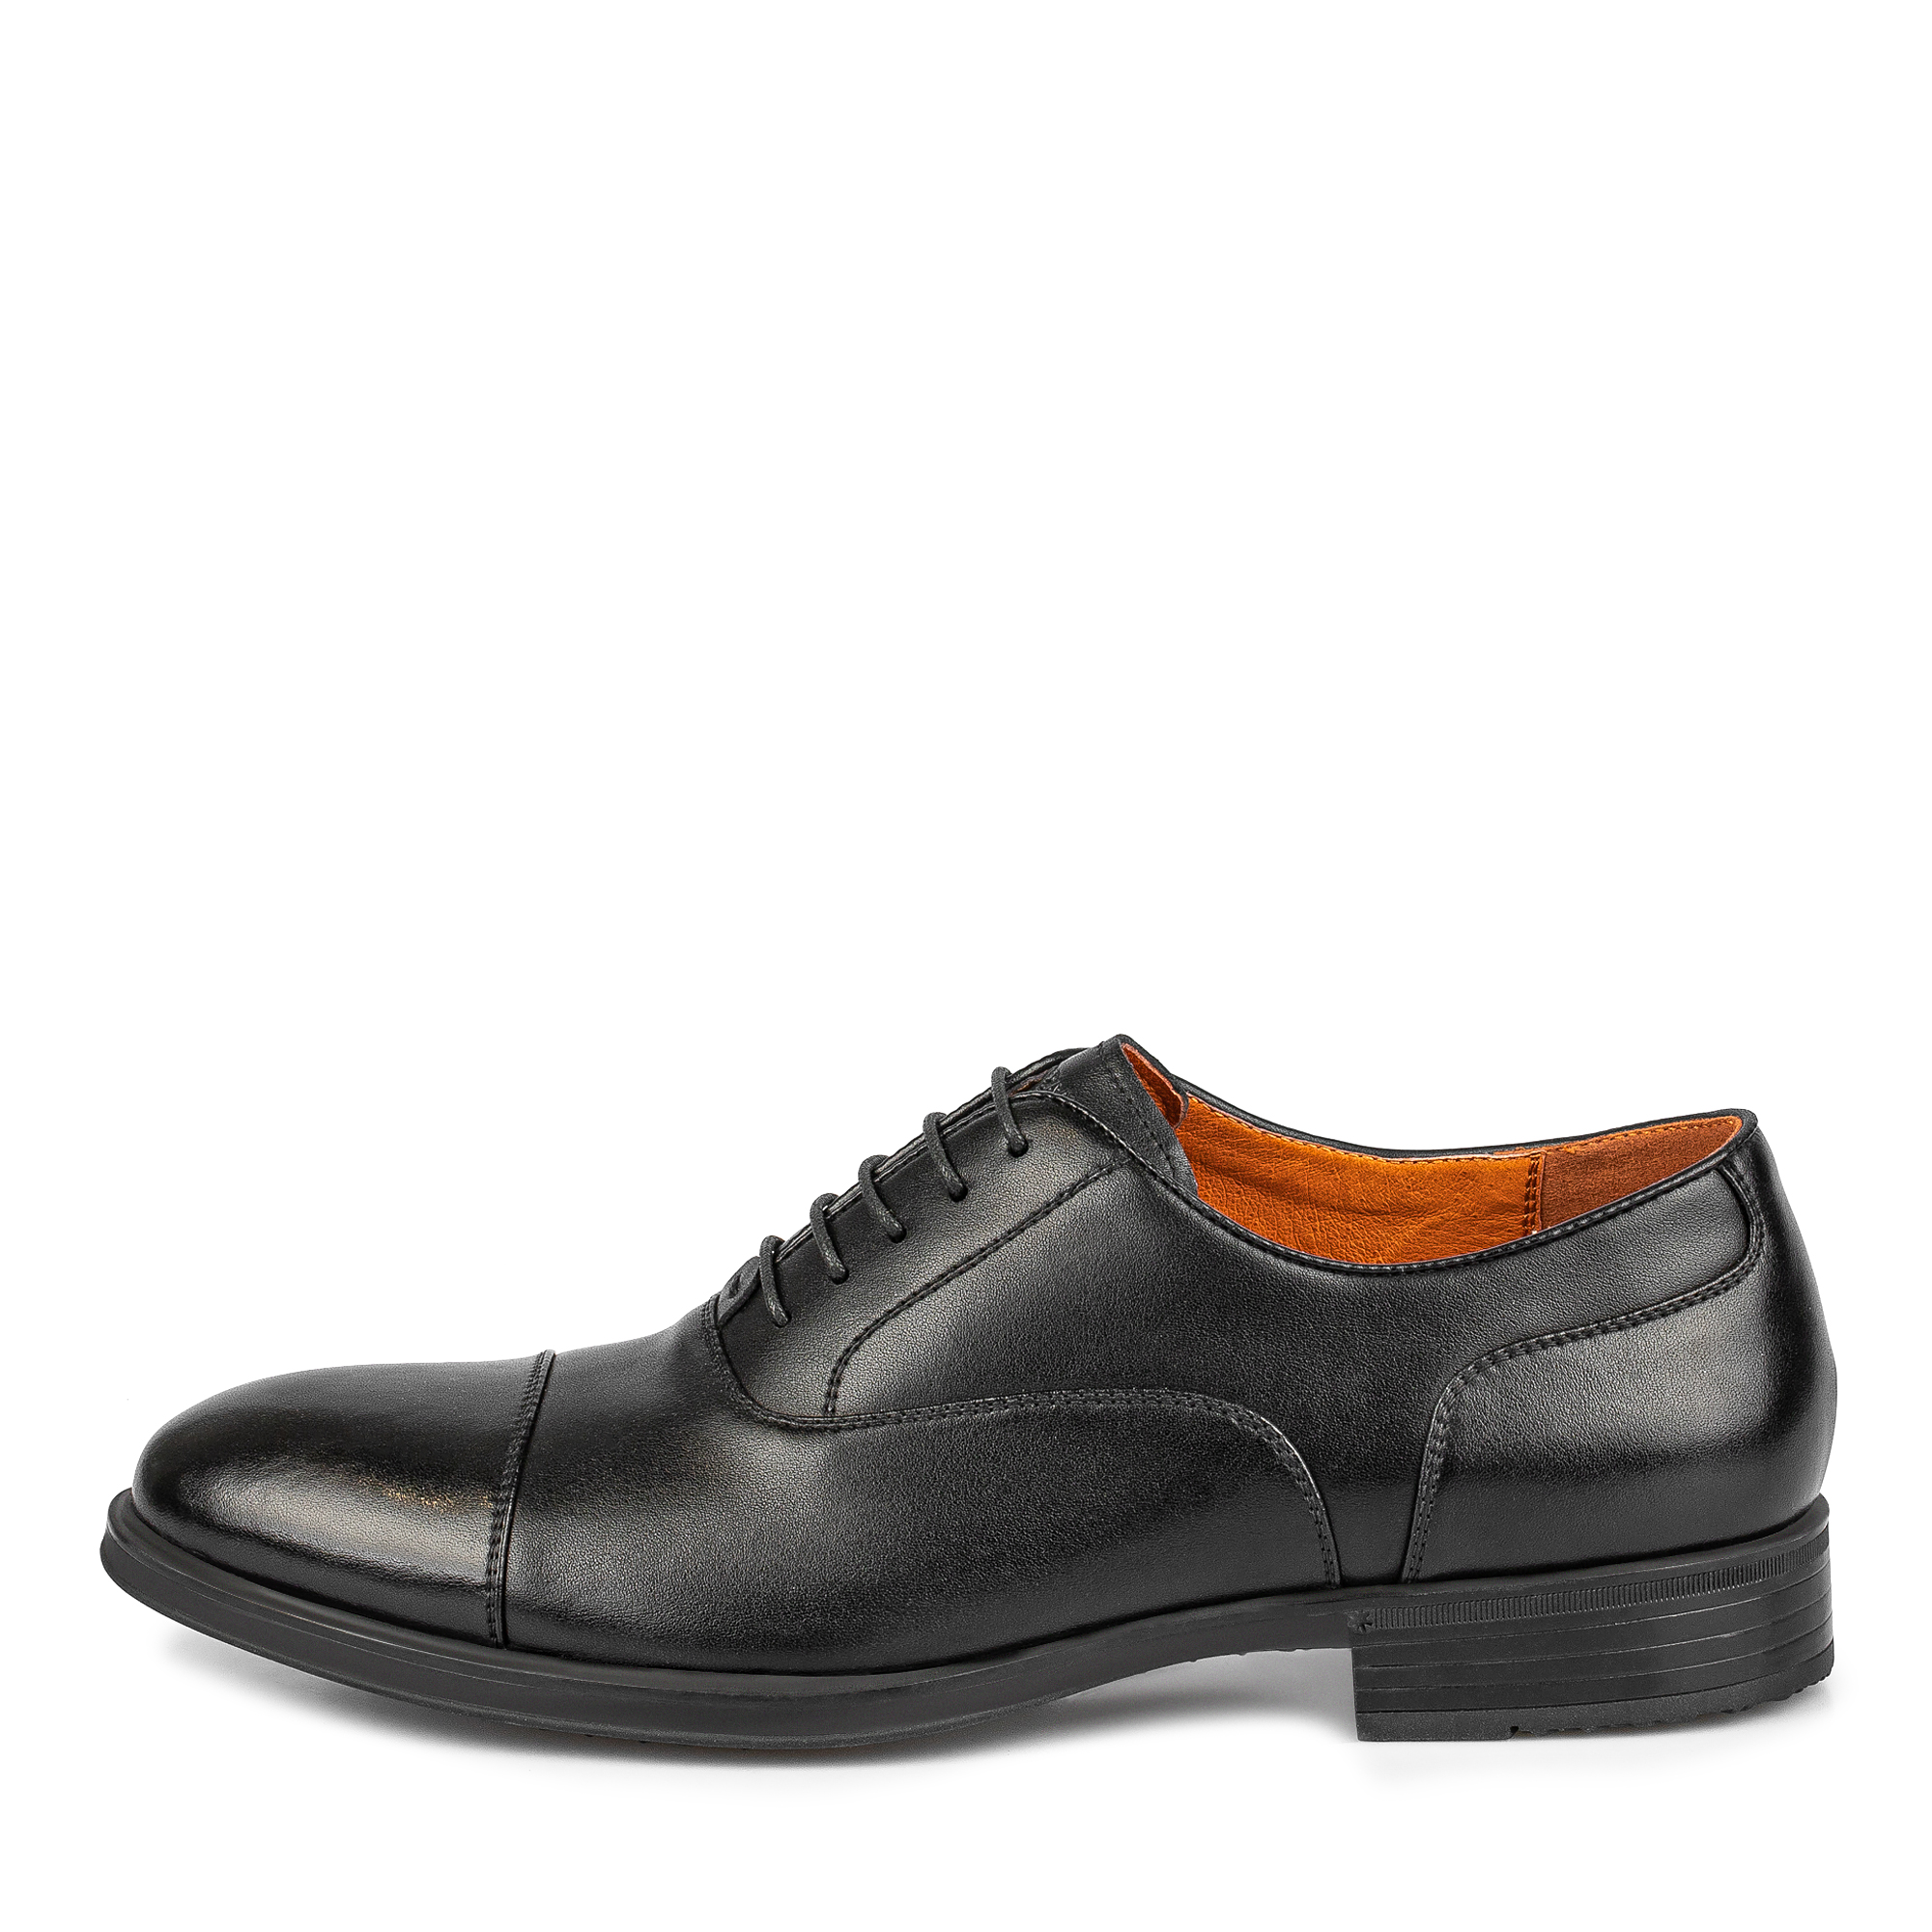 Туфли/полуботинки Thomas Munz 104-648A-1602, цвет черный, размер 42